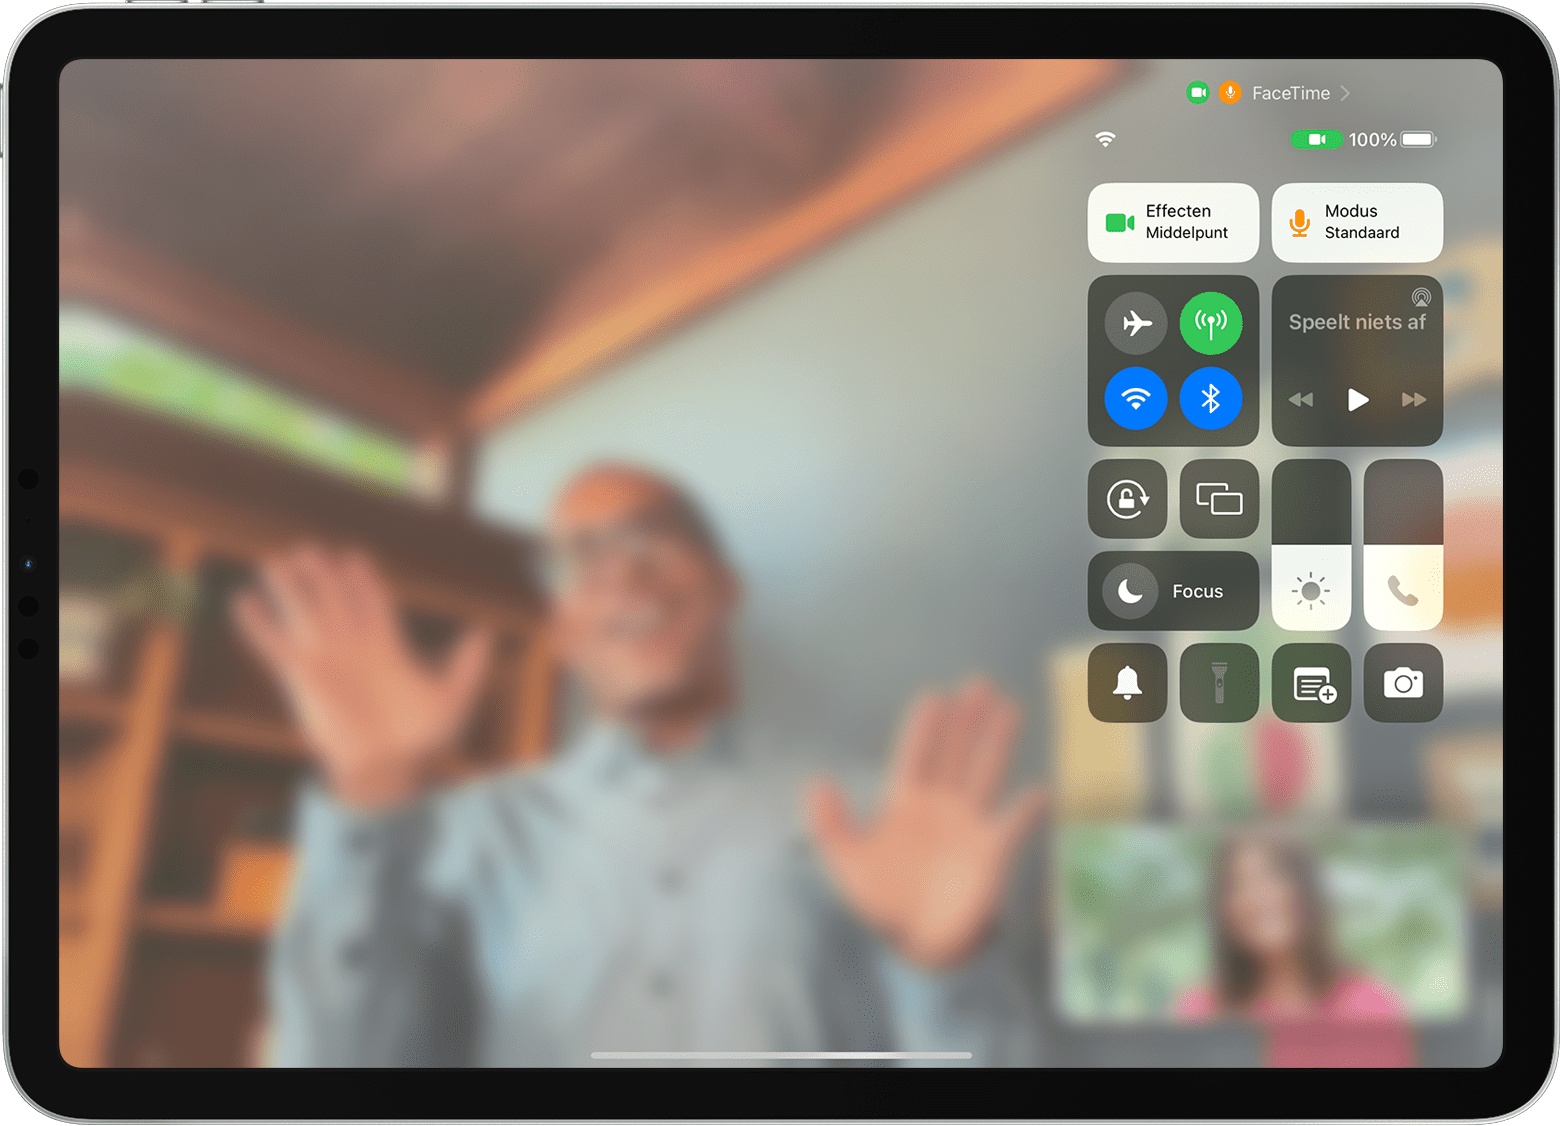 iPad-scherm waarop een FaceTime-gesprek en het bedieningspaneel zichtbaar zijn, inclusief de knop 'Effecten'